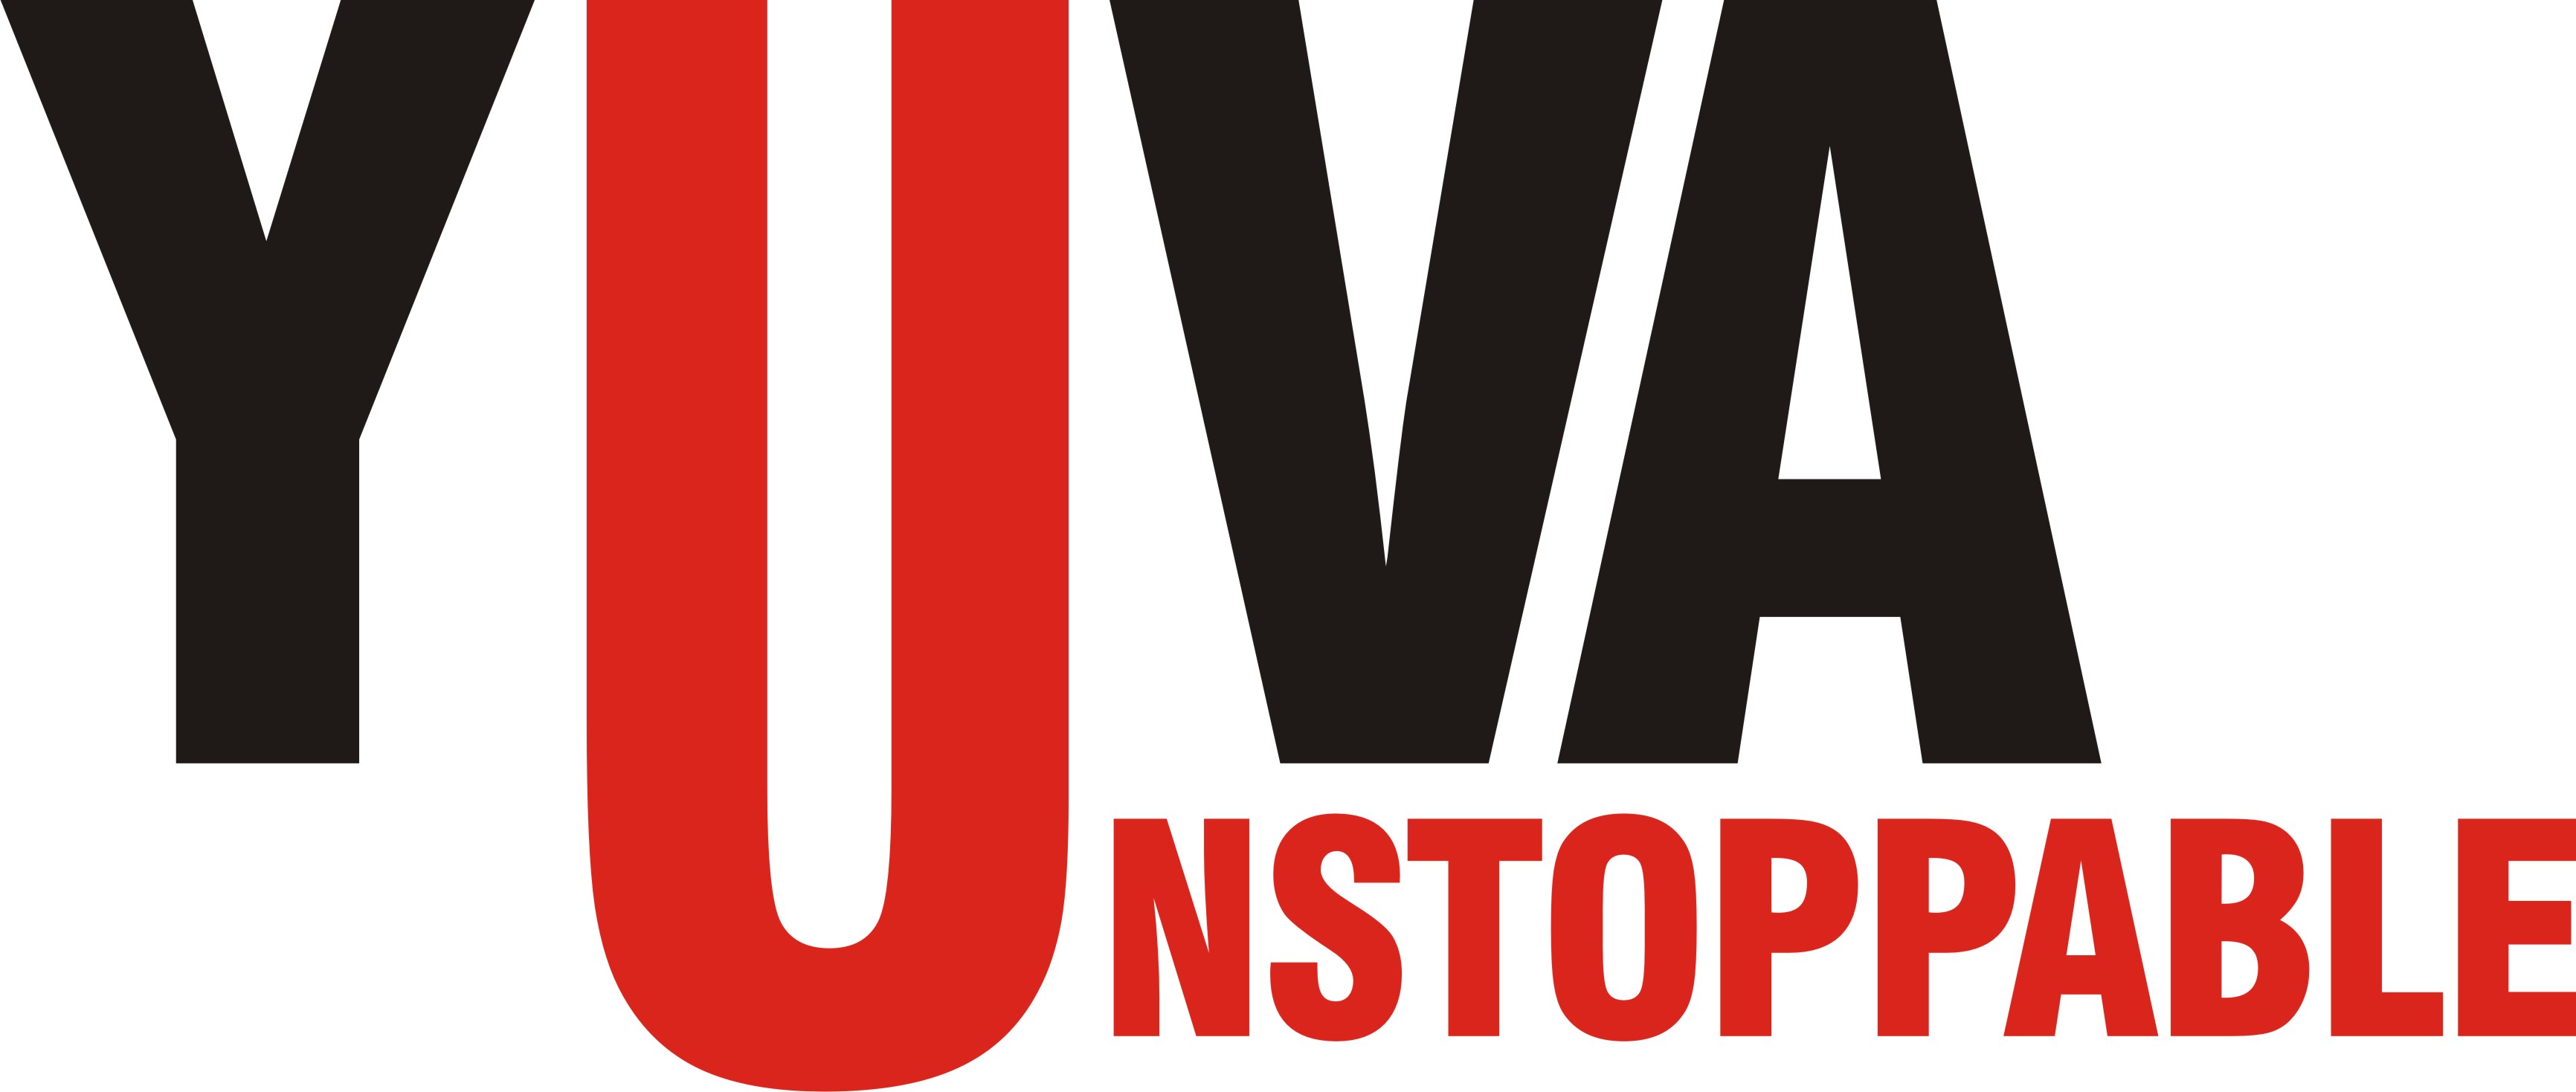 Yuva_Unstoppable_Logo